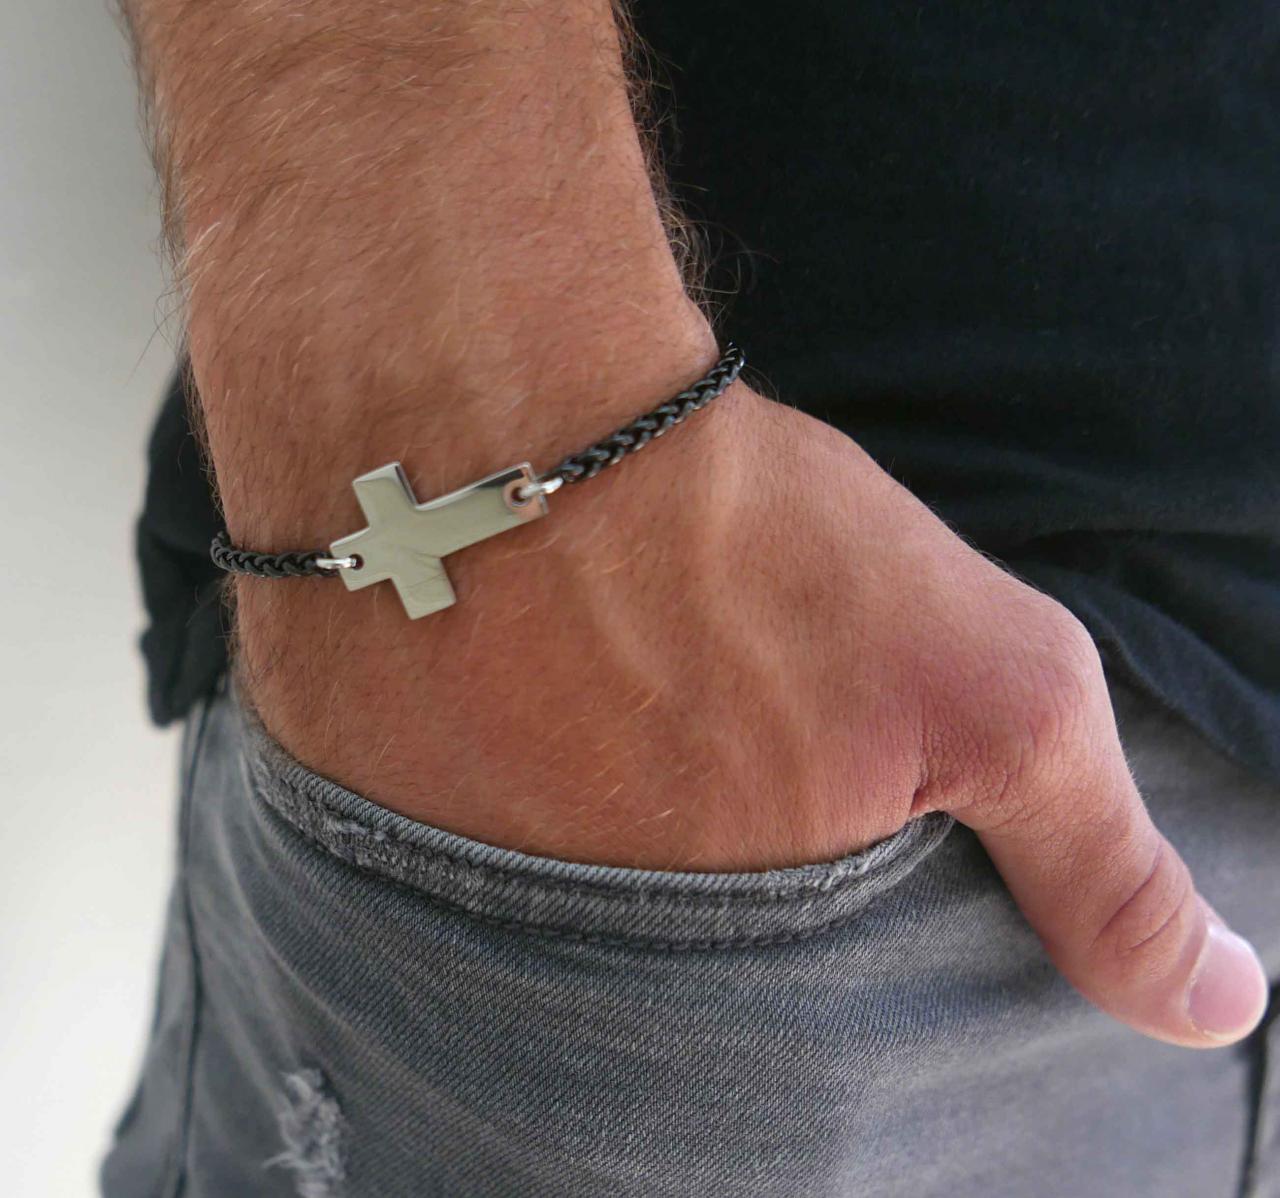 Men's Cross Bracelet - Men's Religious Bracelet - Men's Christian Bracelet - Men's Chain Bracelet -